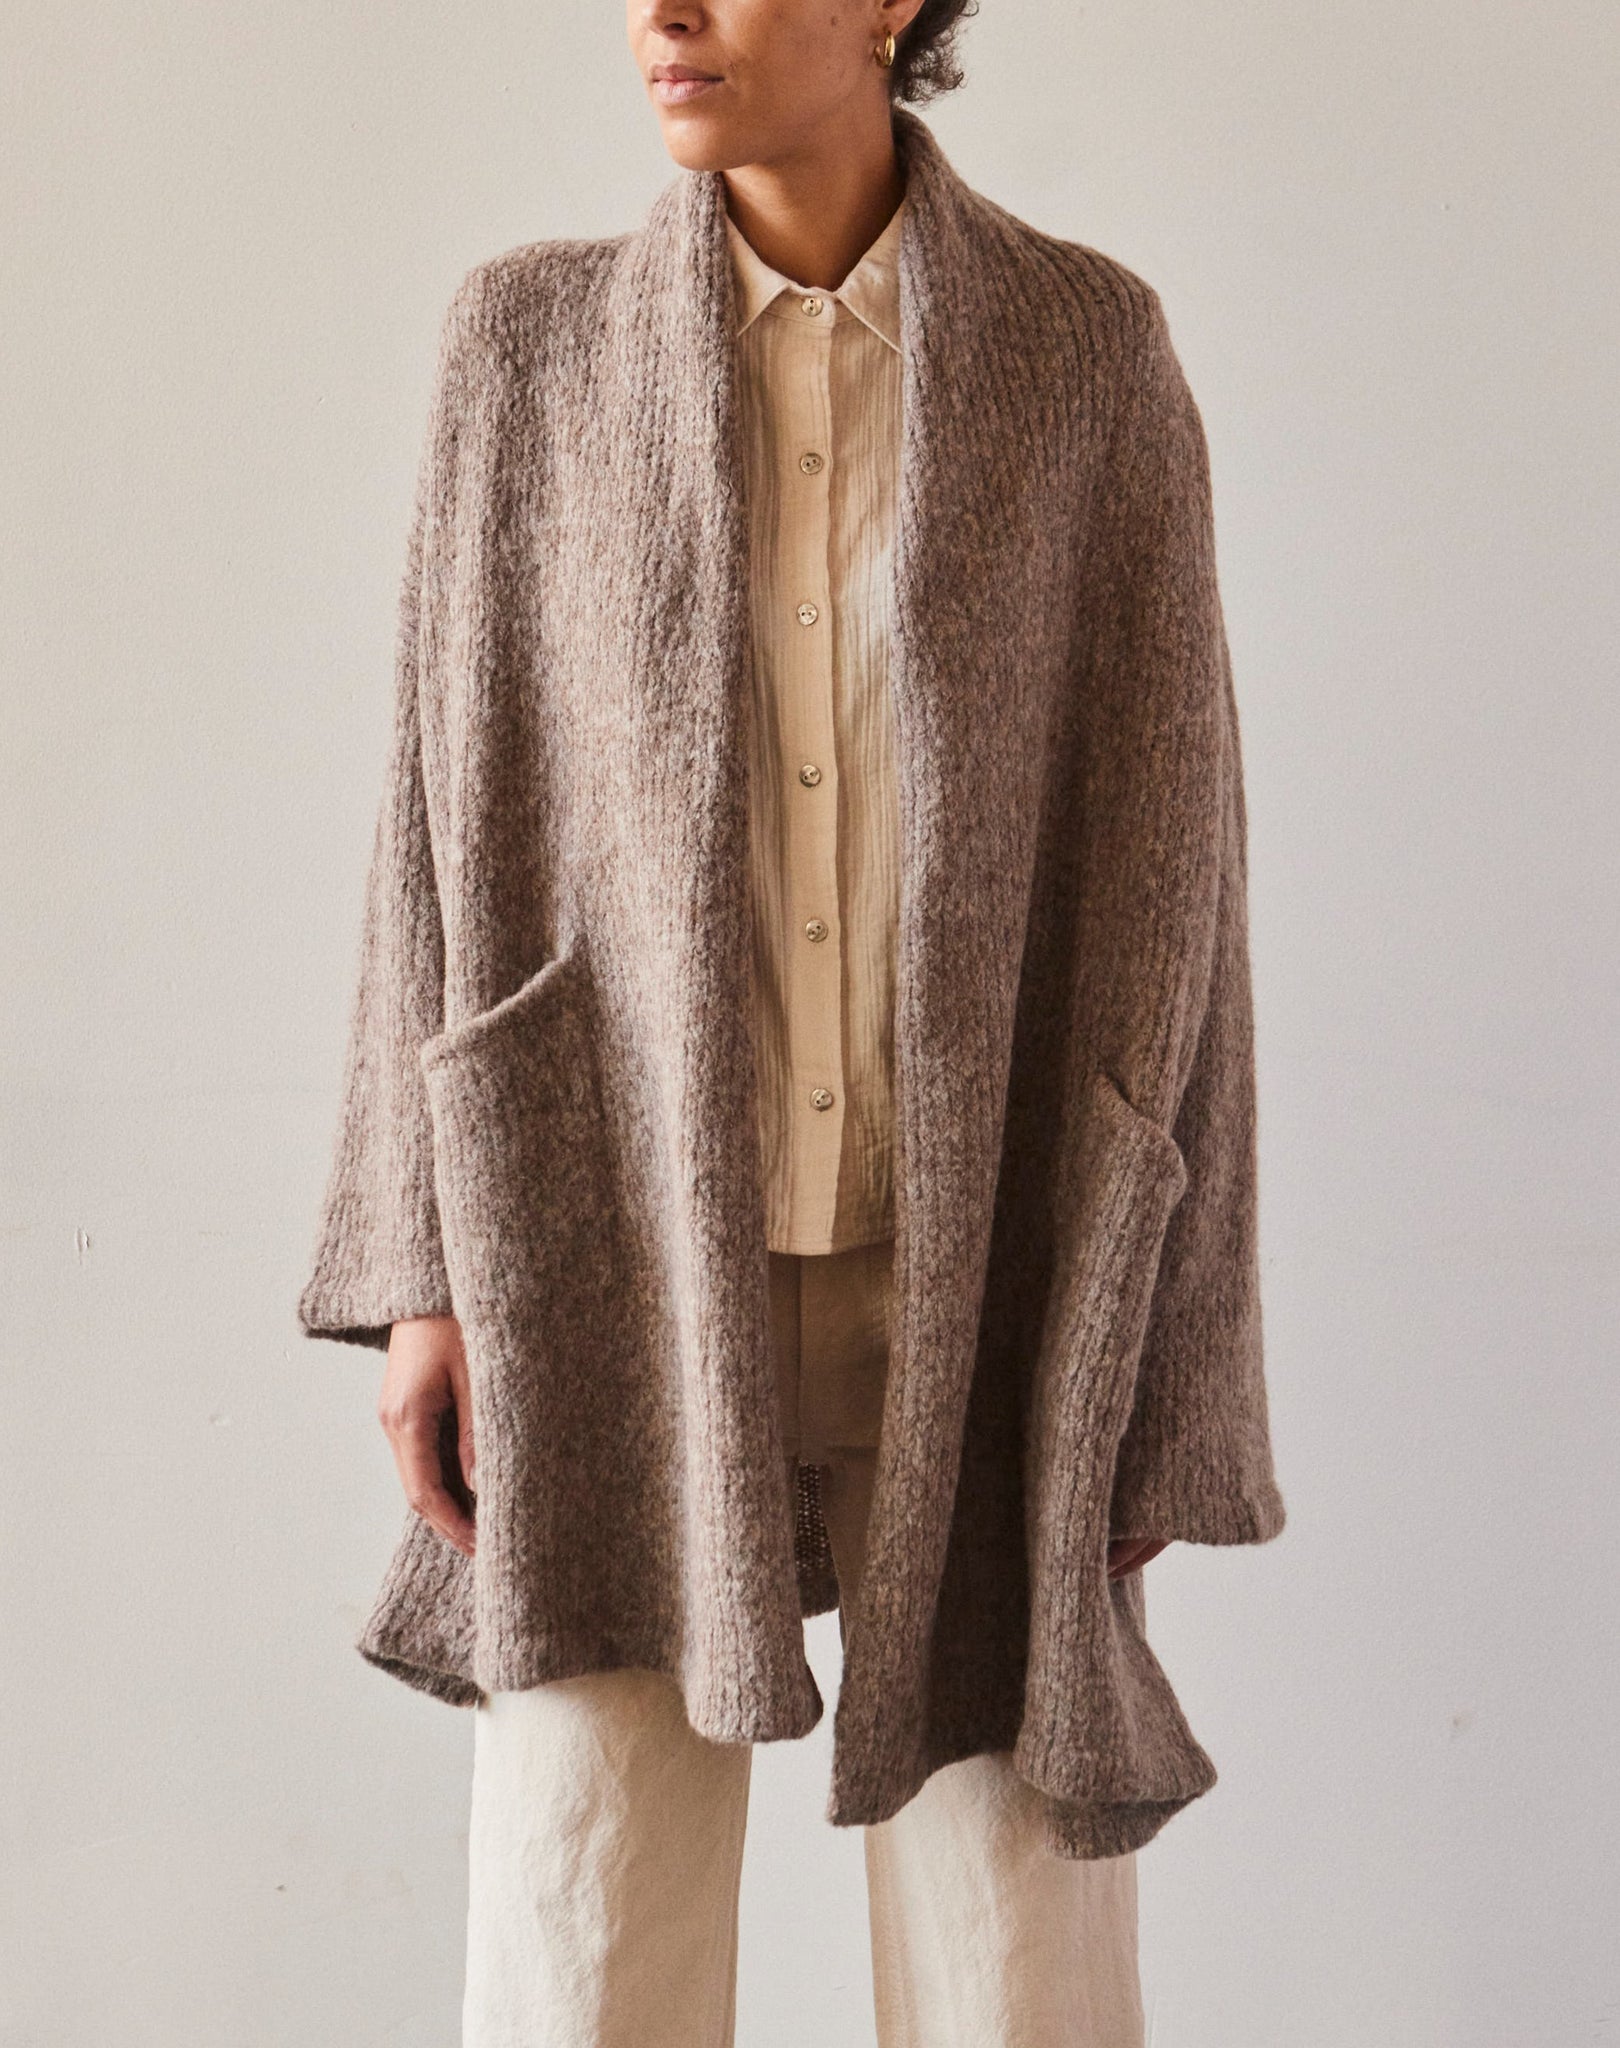 Atelier Delphine Haori Coat, Deer